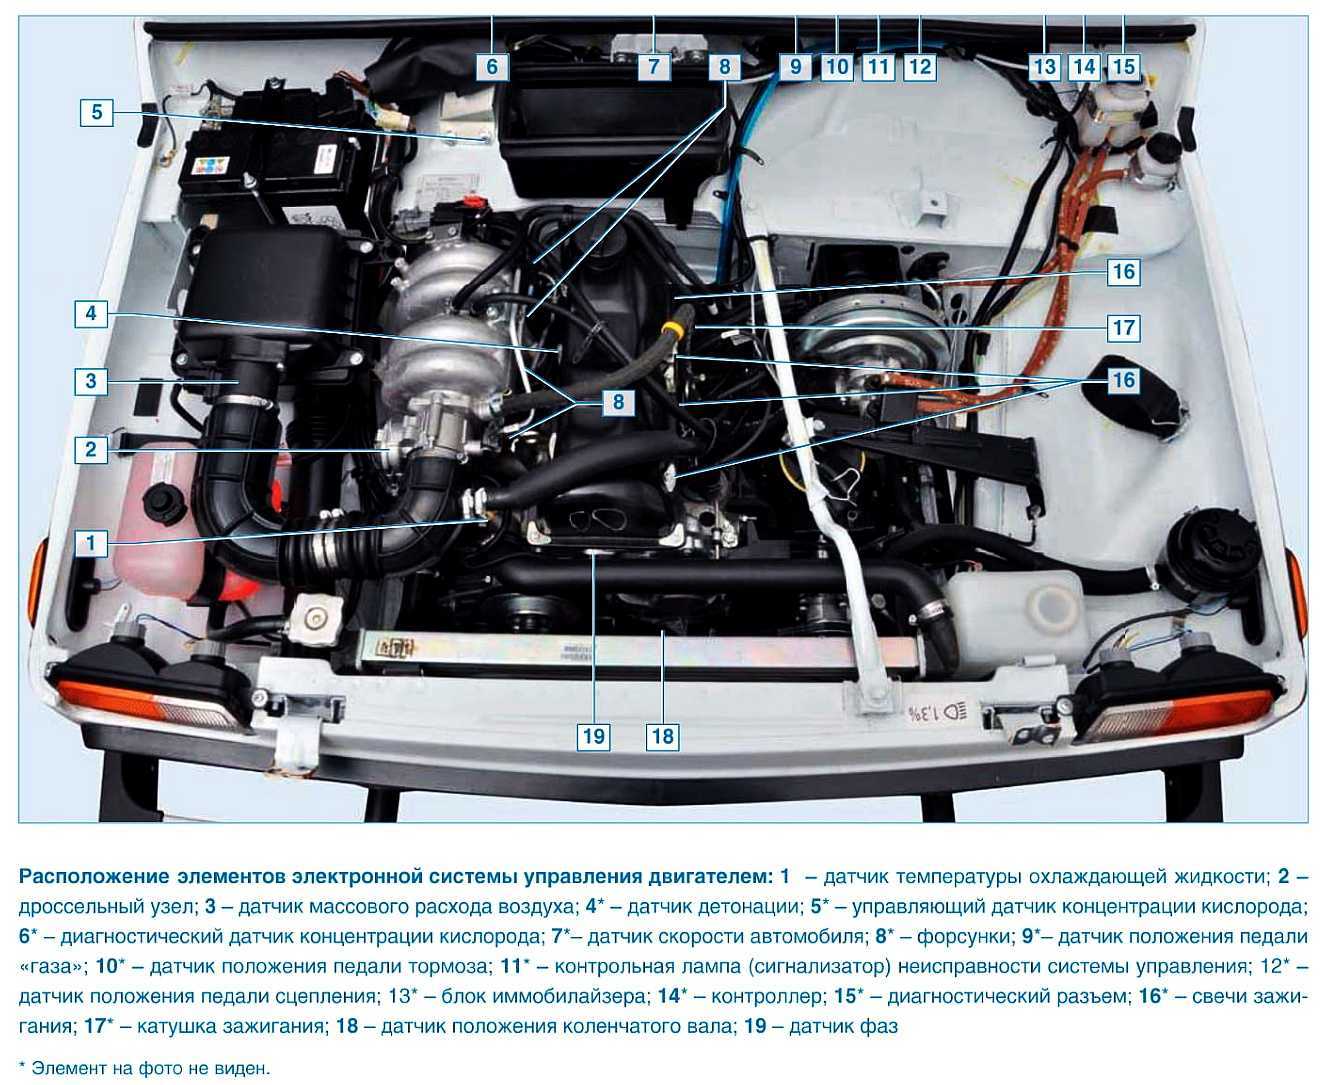 Двигатель шевроле нива, характеристики, тюнинг и неисправности